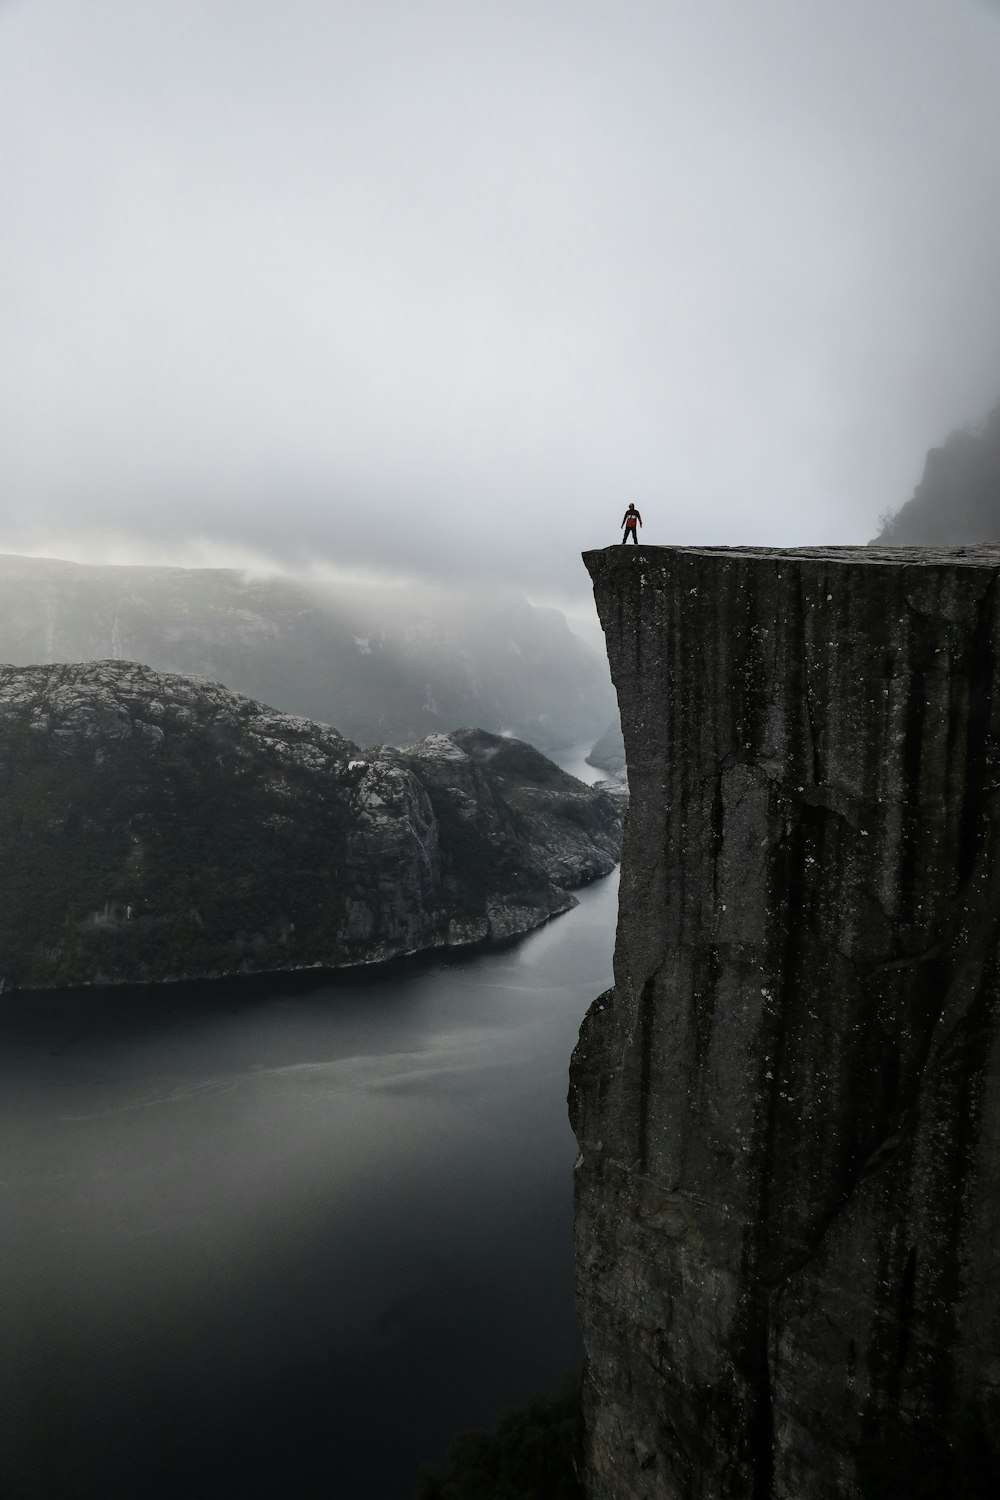 Una persona parada al borde de un acantilado